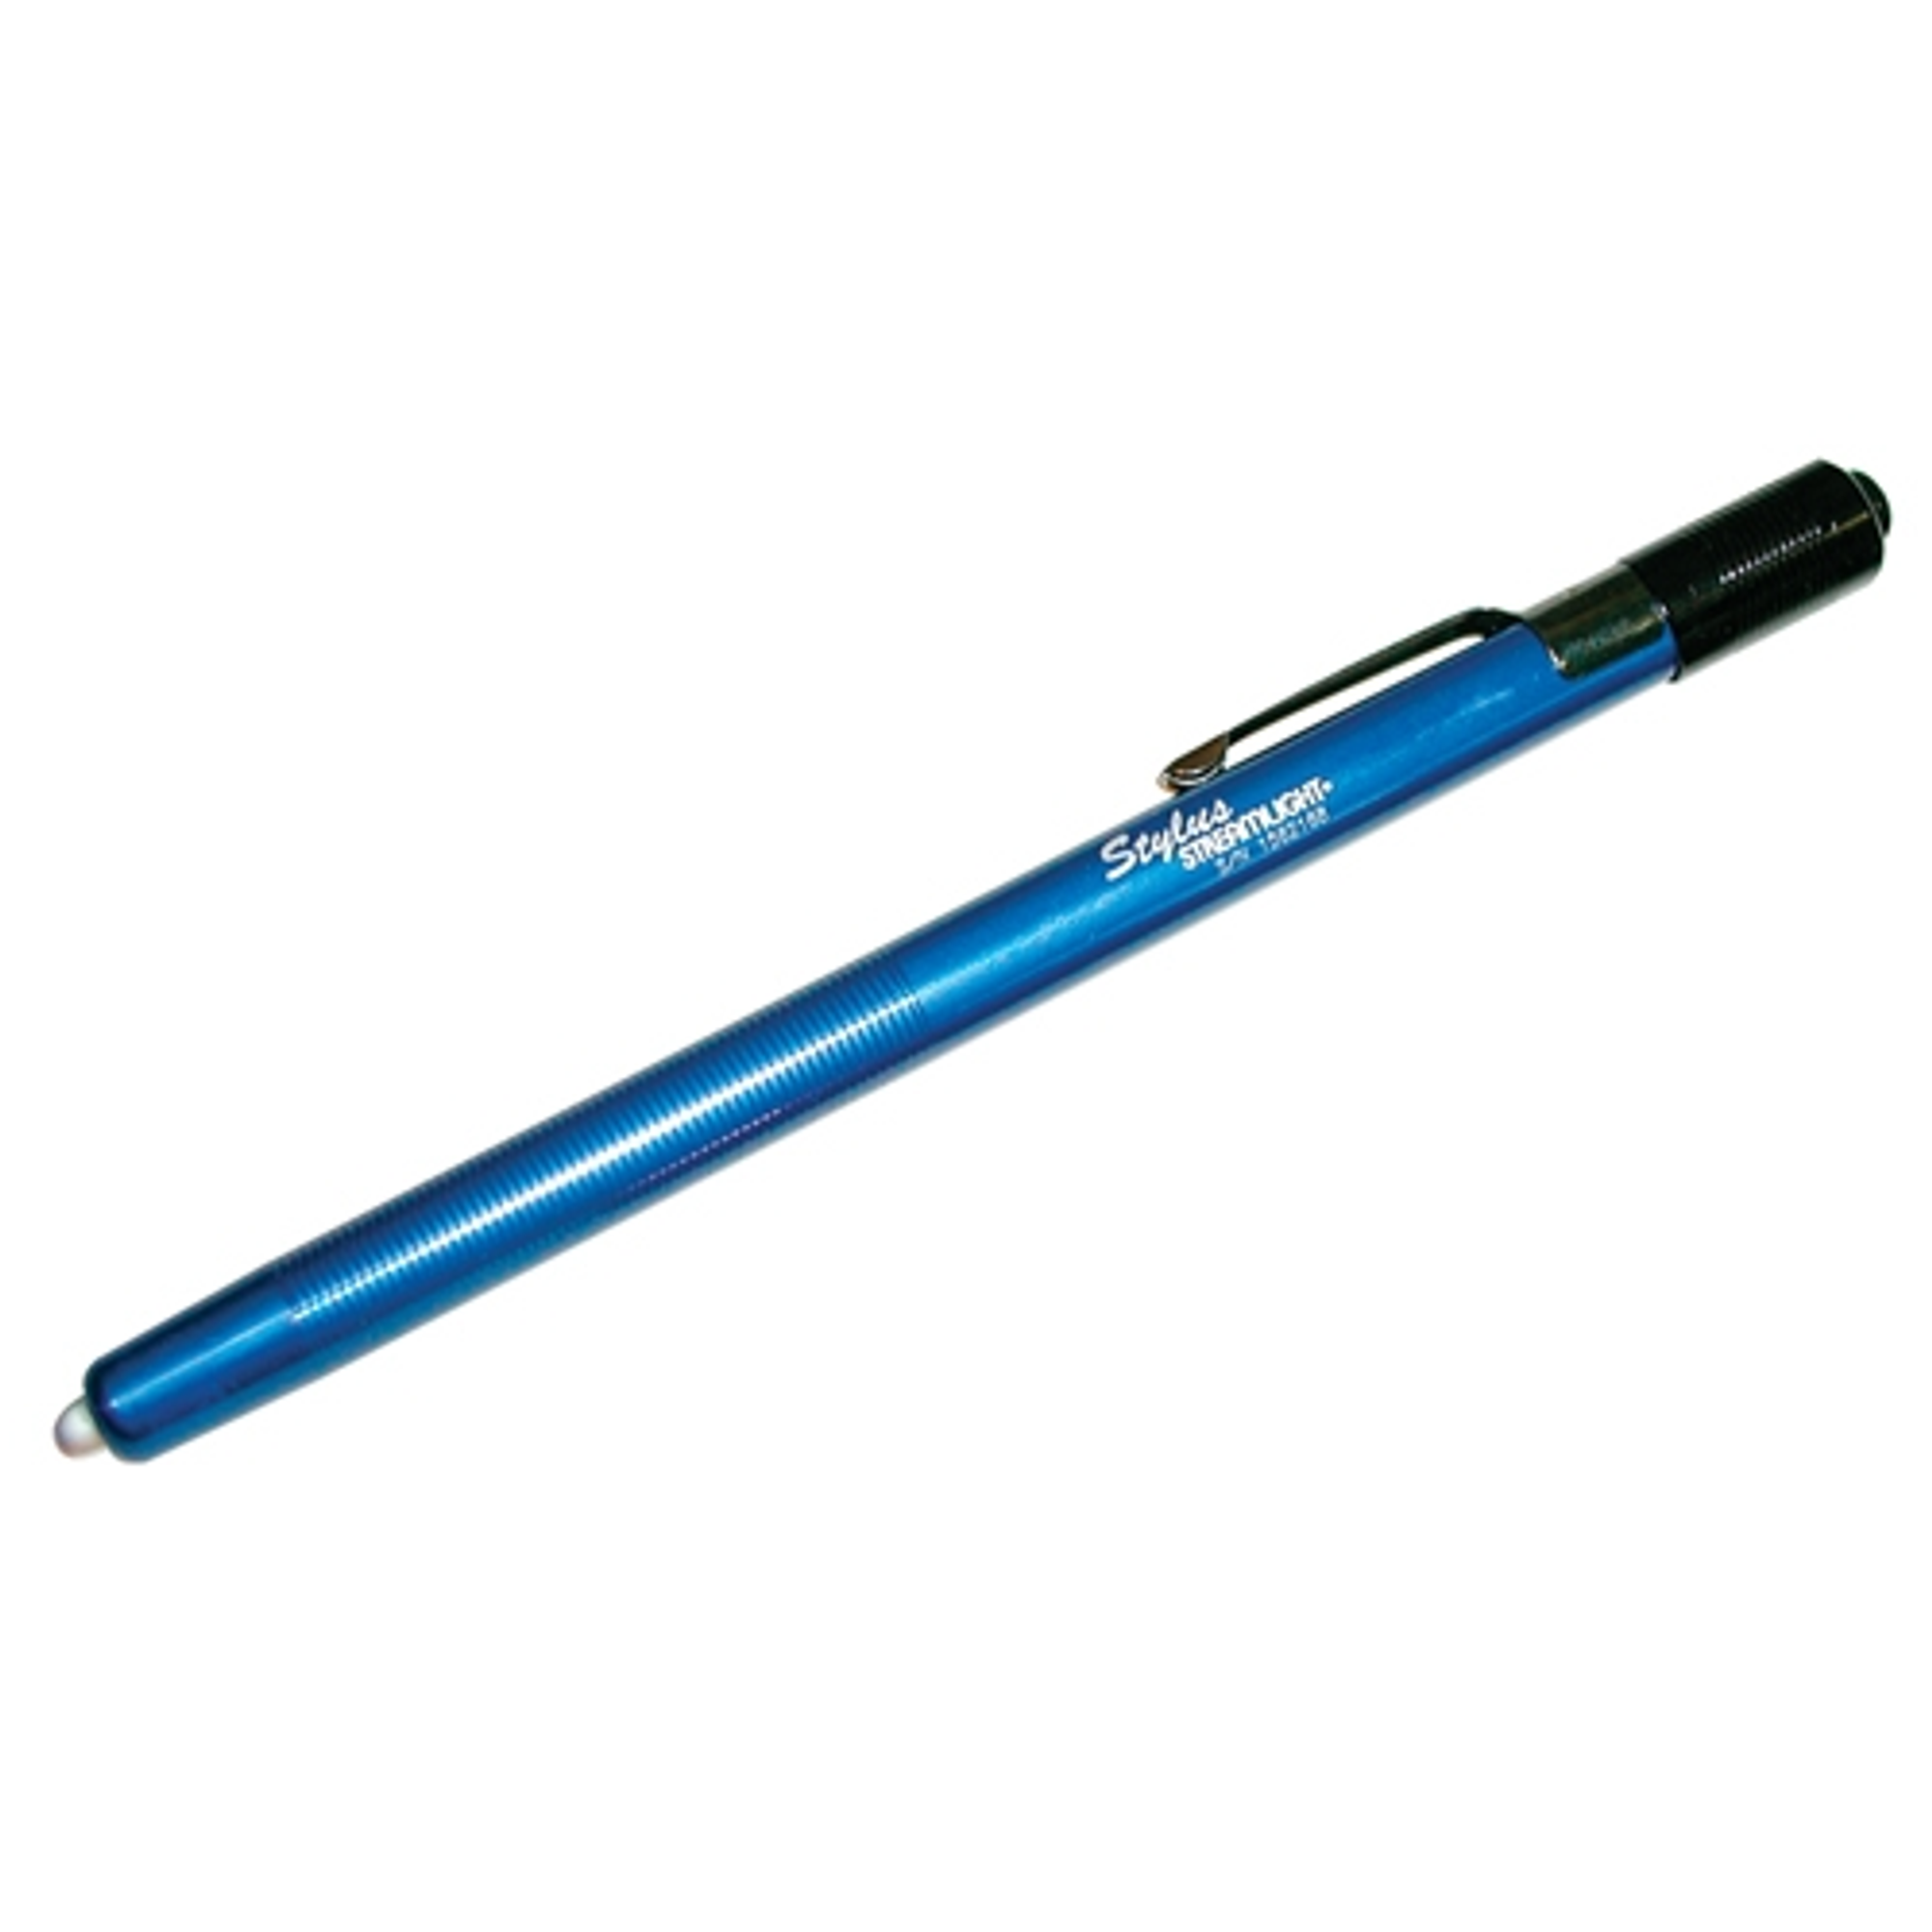 Stylus Penlight - KR65050